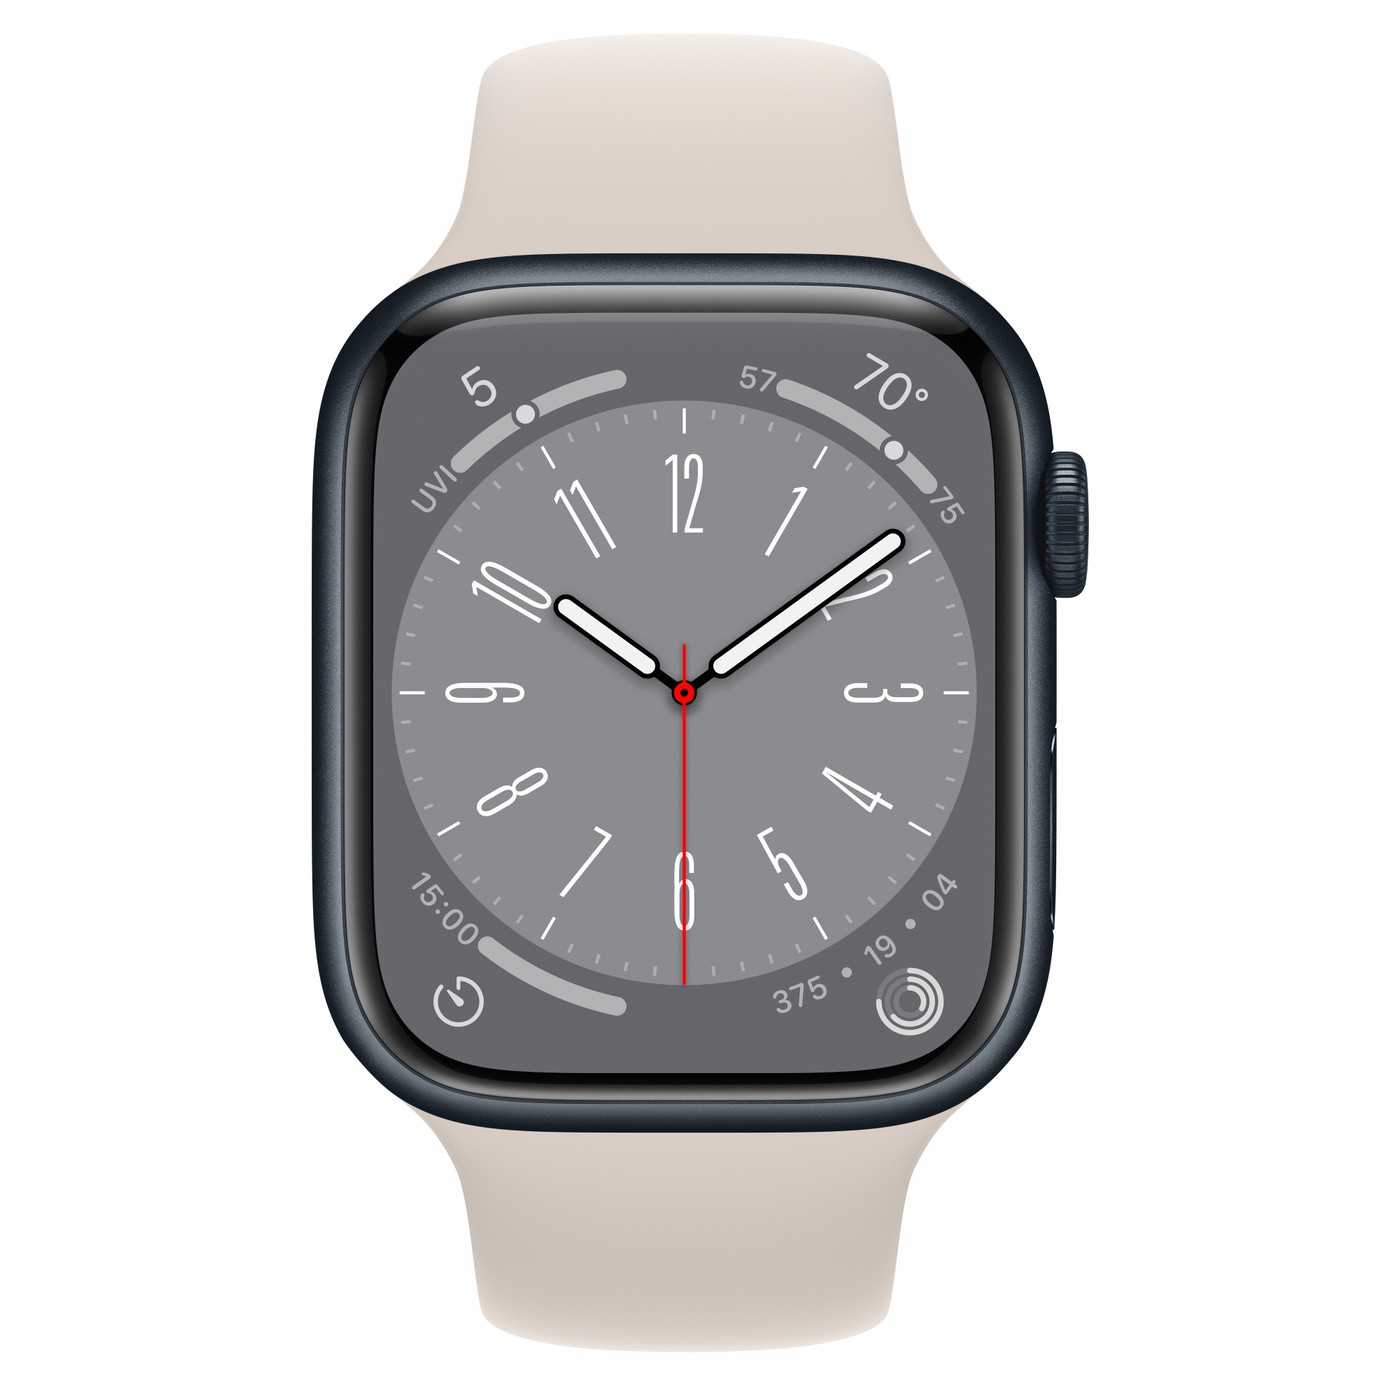 Apple Watch : les fonctionnalités d'origine détaillées